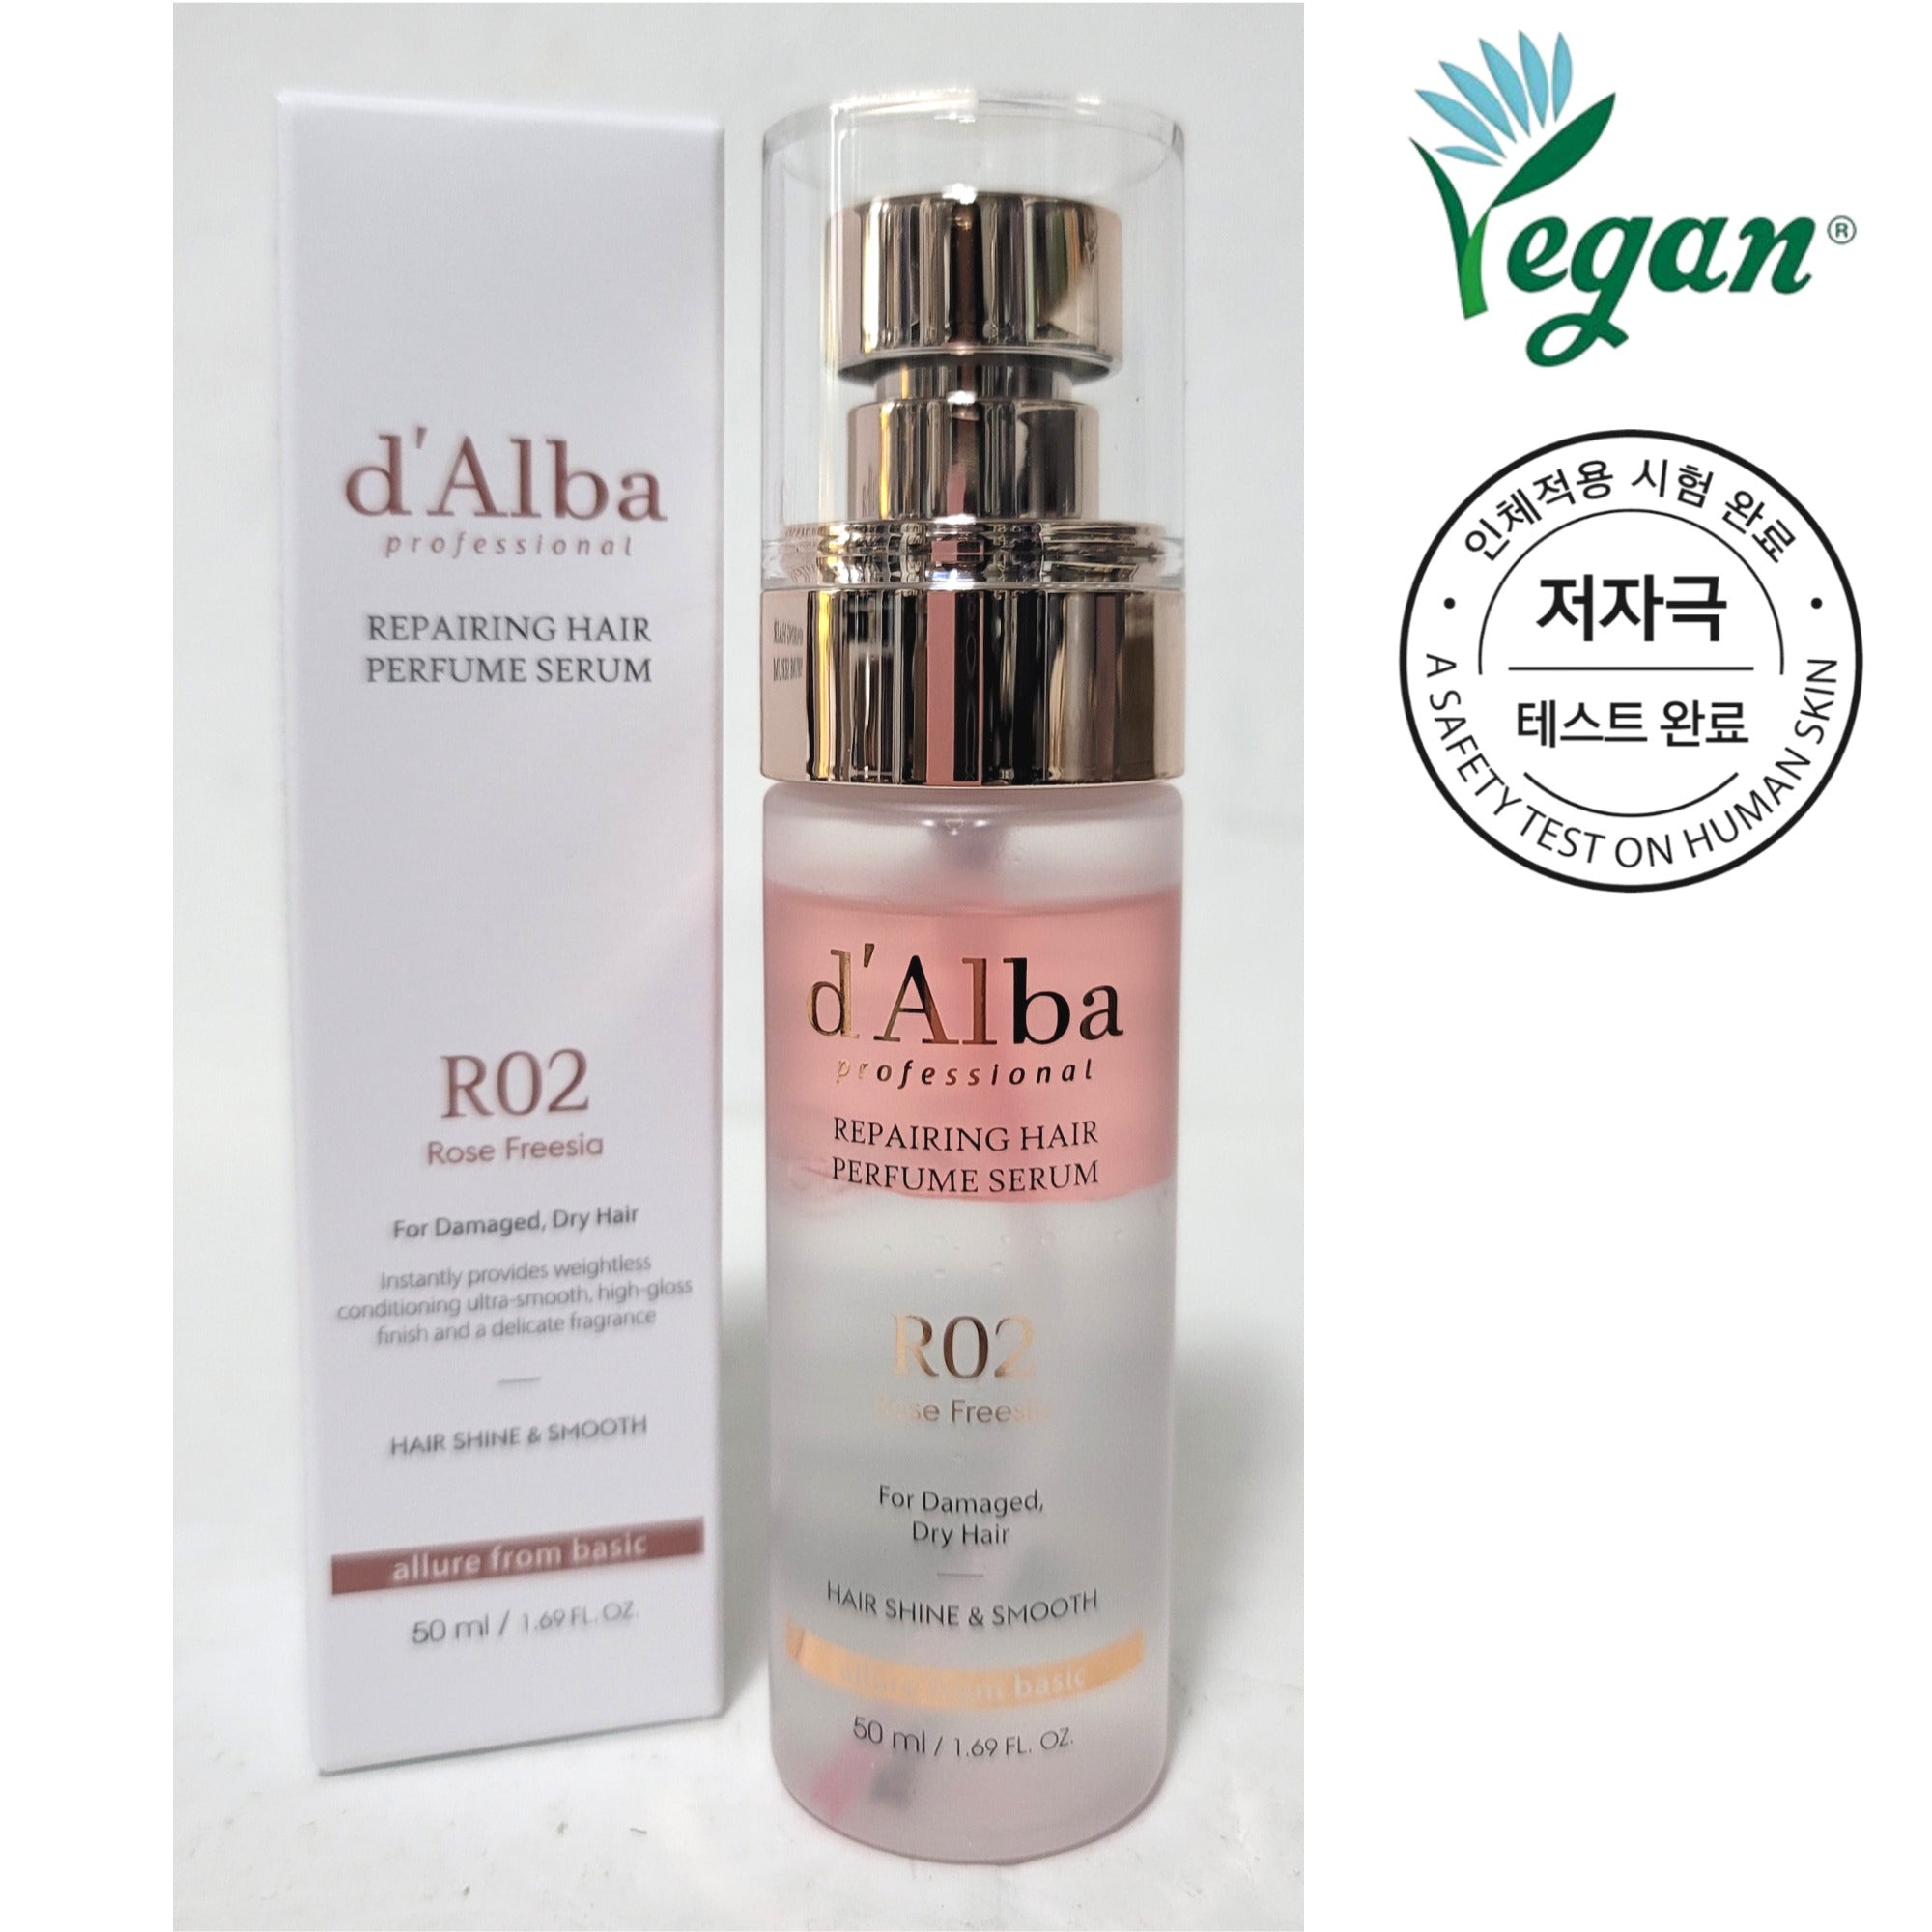 d'Alba Hair Repairing Perfume Serum 50ml/1.59fl oz